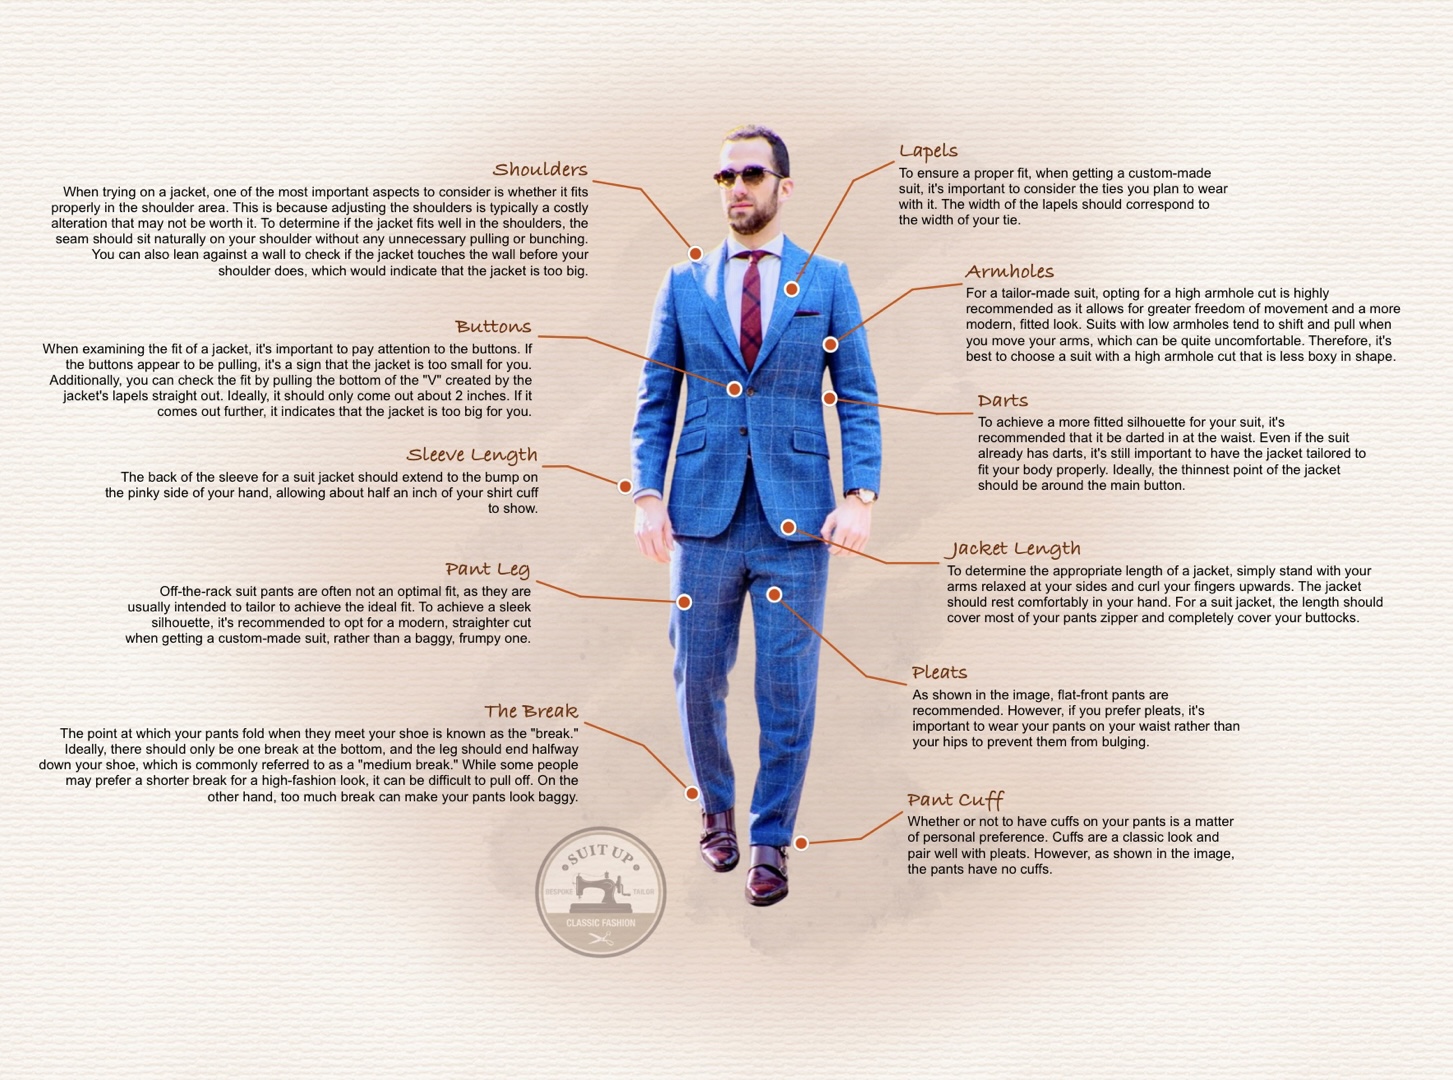 How Your Suit Should Fit - SUIT UP Classic Fashion